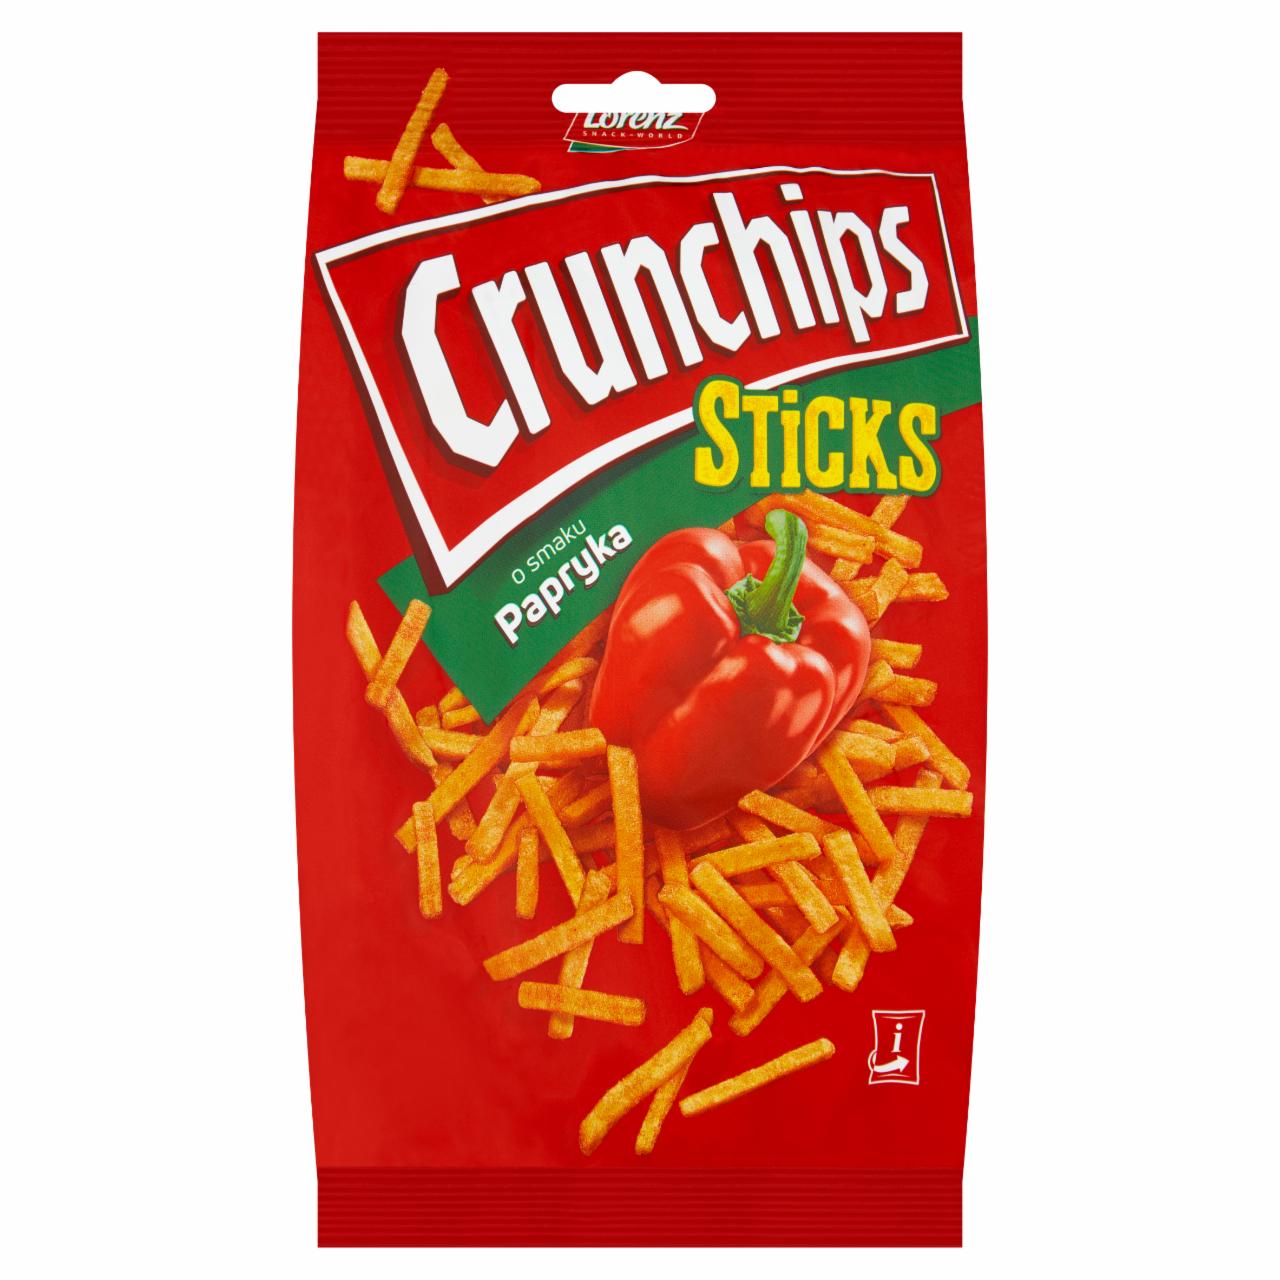 Zdjęcia - Crunchips Sticks Chipsy ziemniaczane o smaku papryka 70 g